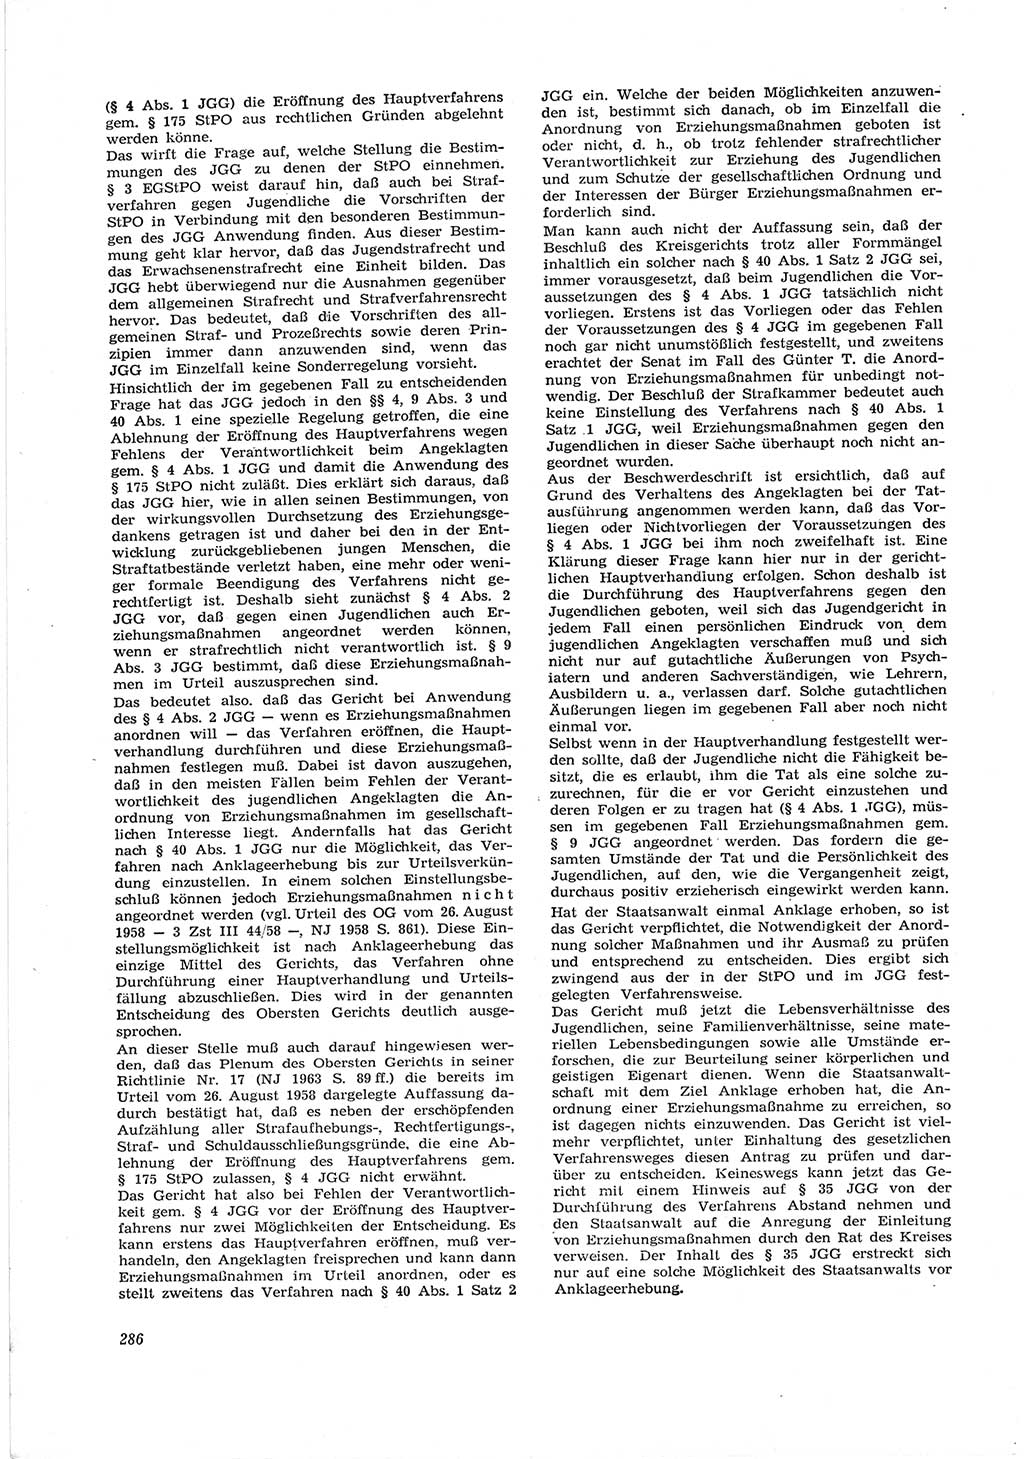 Neue Justiz (NJ), Zeitschrift für Recht und Rechtswissenschaft [Deutsche Demokratische Republik (DDR)], 17. Jahrgang 1963, Seite 286 (NJ DDR 1963, S. 286)